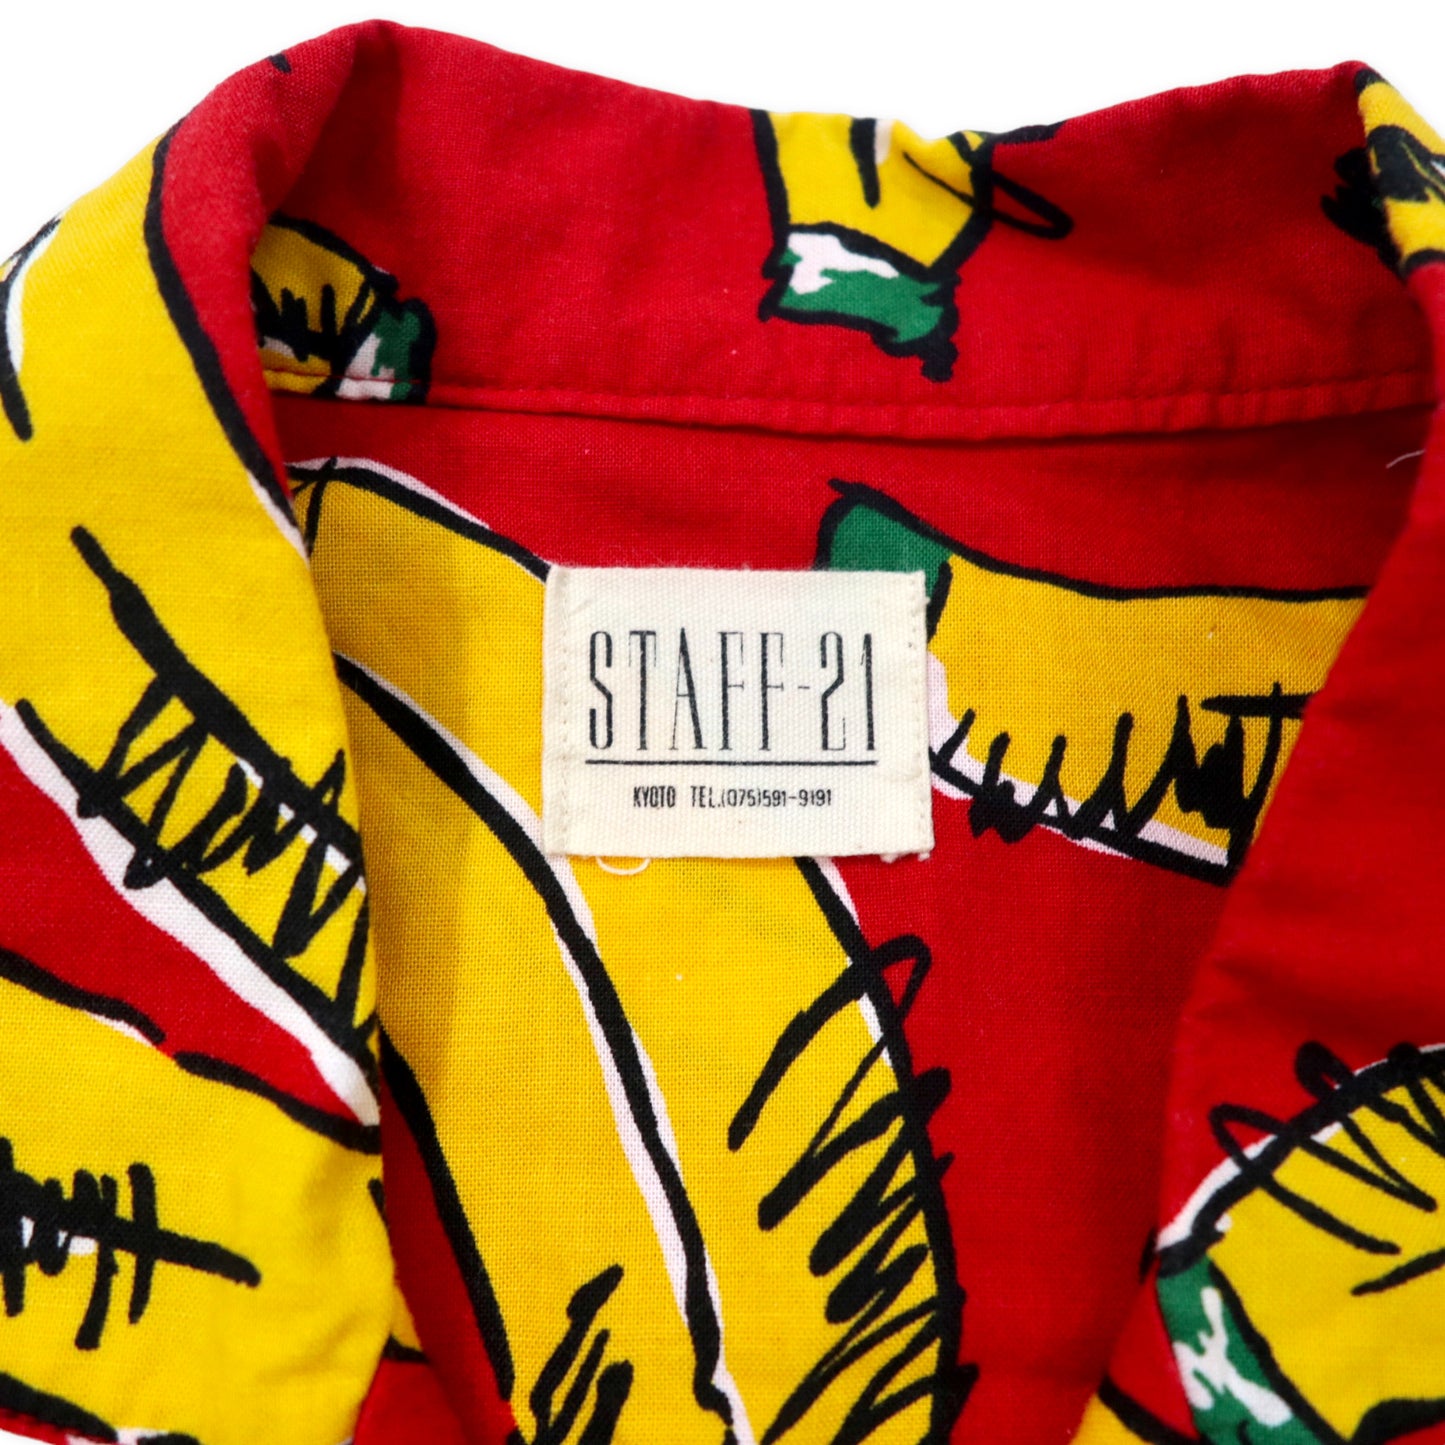 STAFF-21 パジャマ  イージーセットアップ オープンカラーシャツ 半袖 FREE レッド コットン 総柄 バナナ 日本製